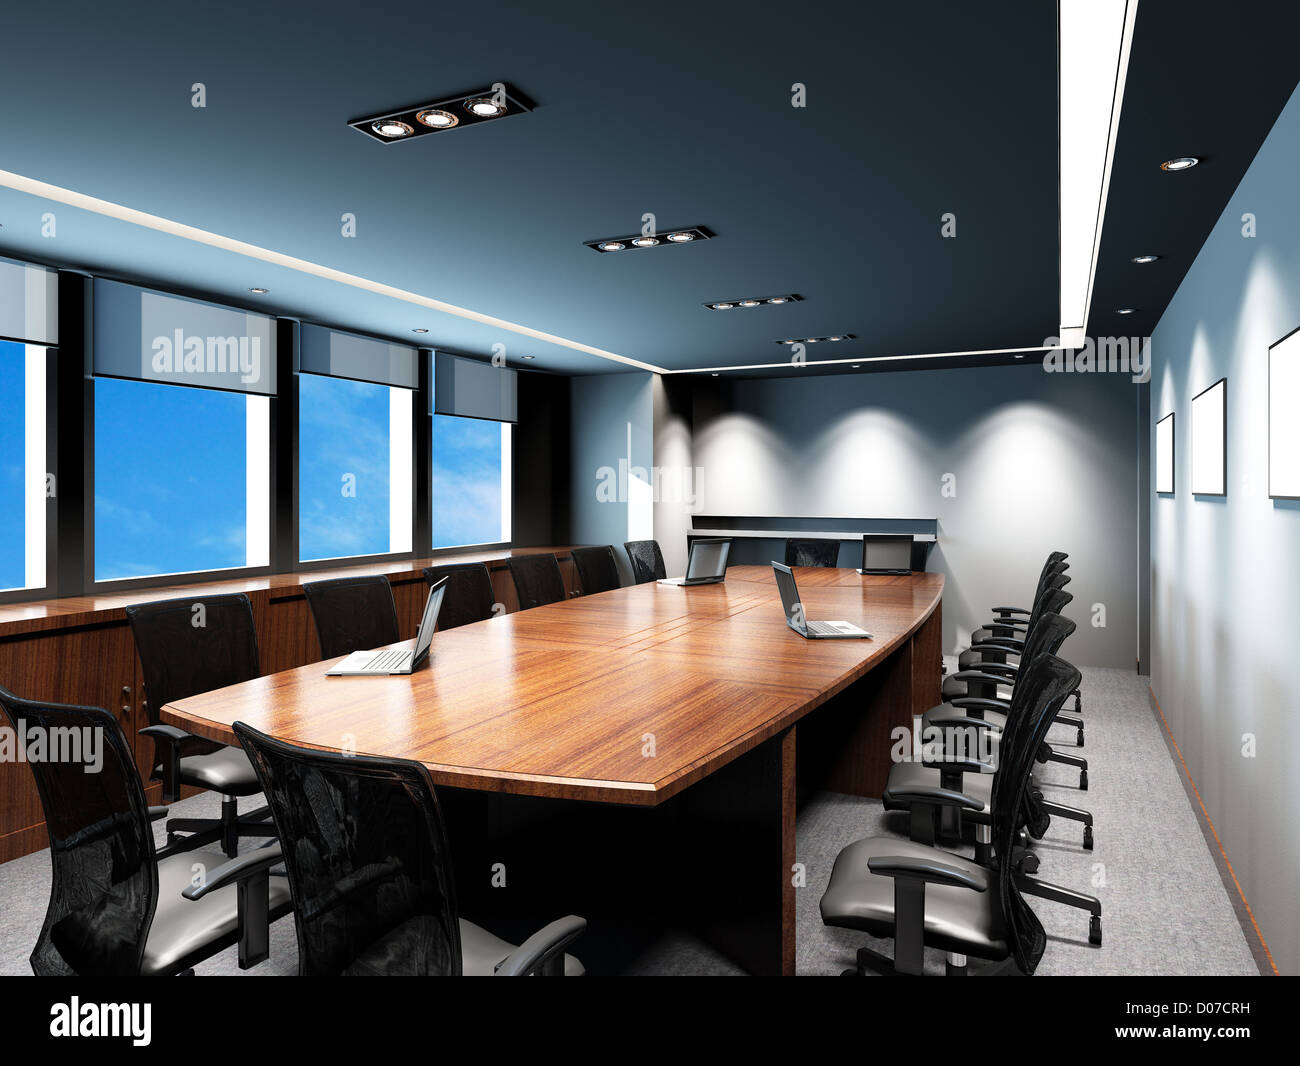 Sala riunioni in ufficio con decor moderno Foto Stock